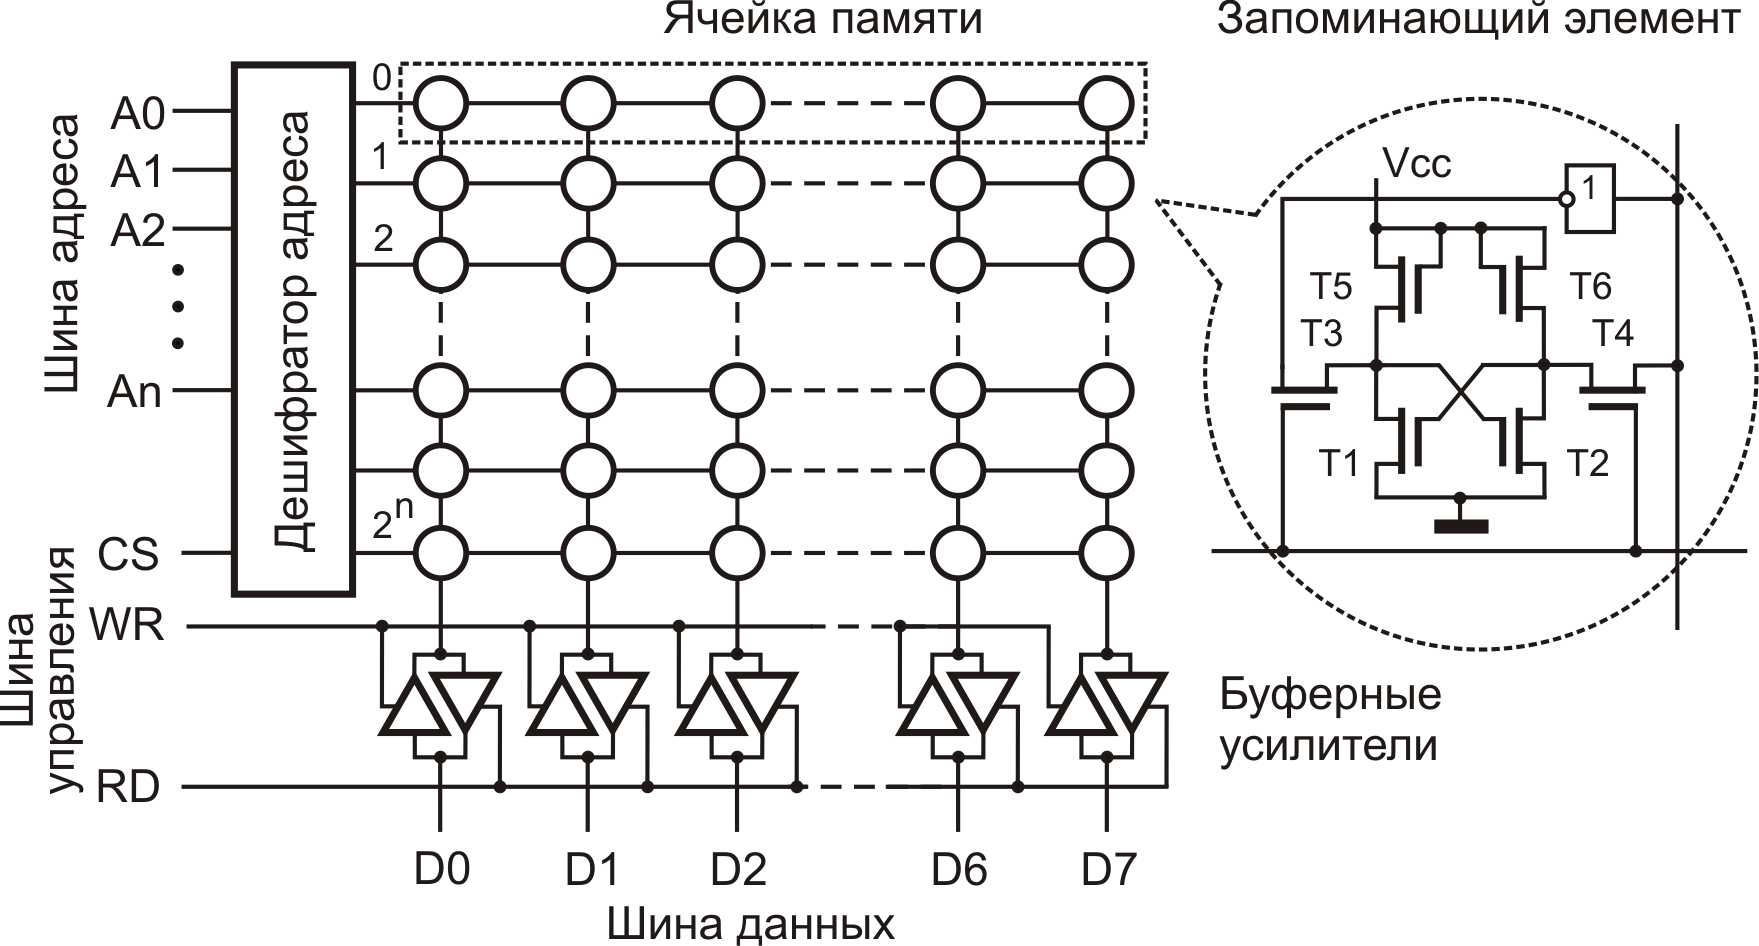 Электронная ячейка памяти. Ячейка памяти компьютера схема. Феррит-транзисторная ячейка памяти. Схема ячейки памяти ОЗУ. Схема ячейки памяти на 1 бит.